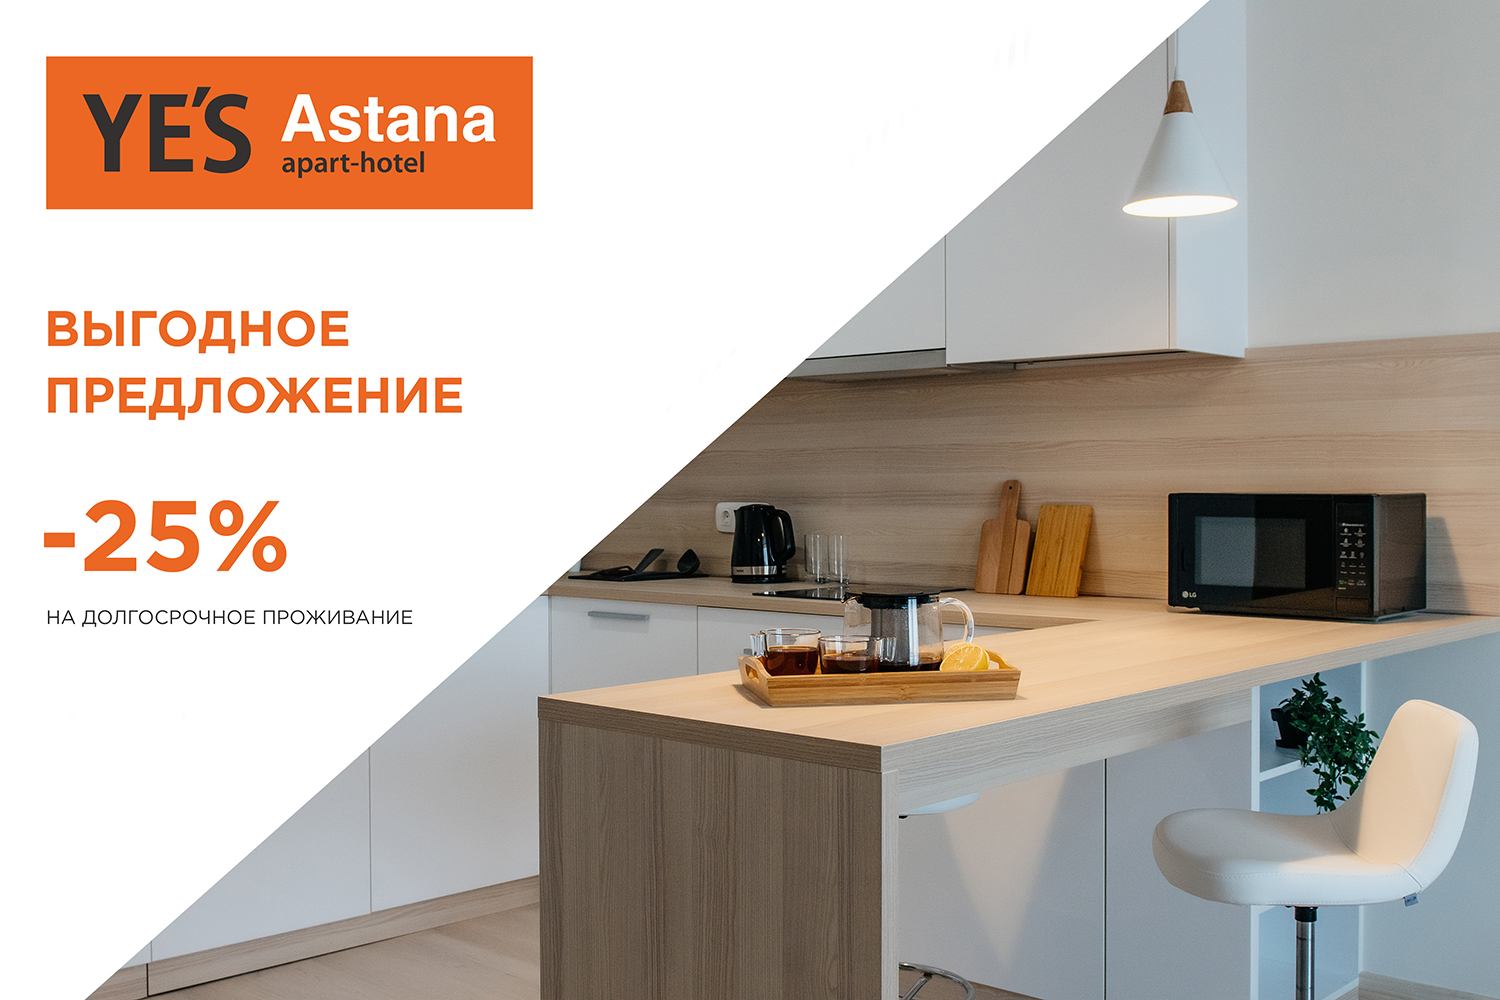 Длительное проживание в YE’S Astana на 25% выгоднее